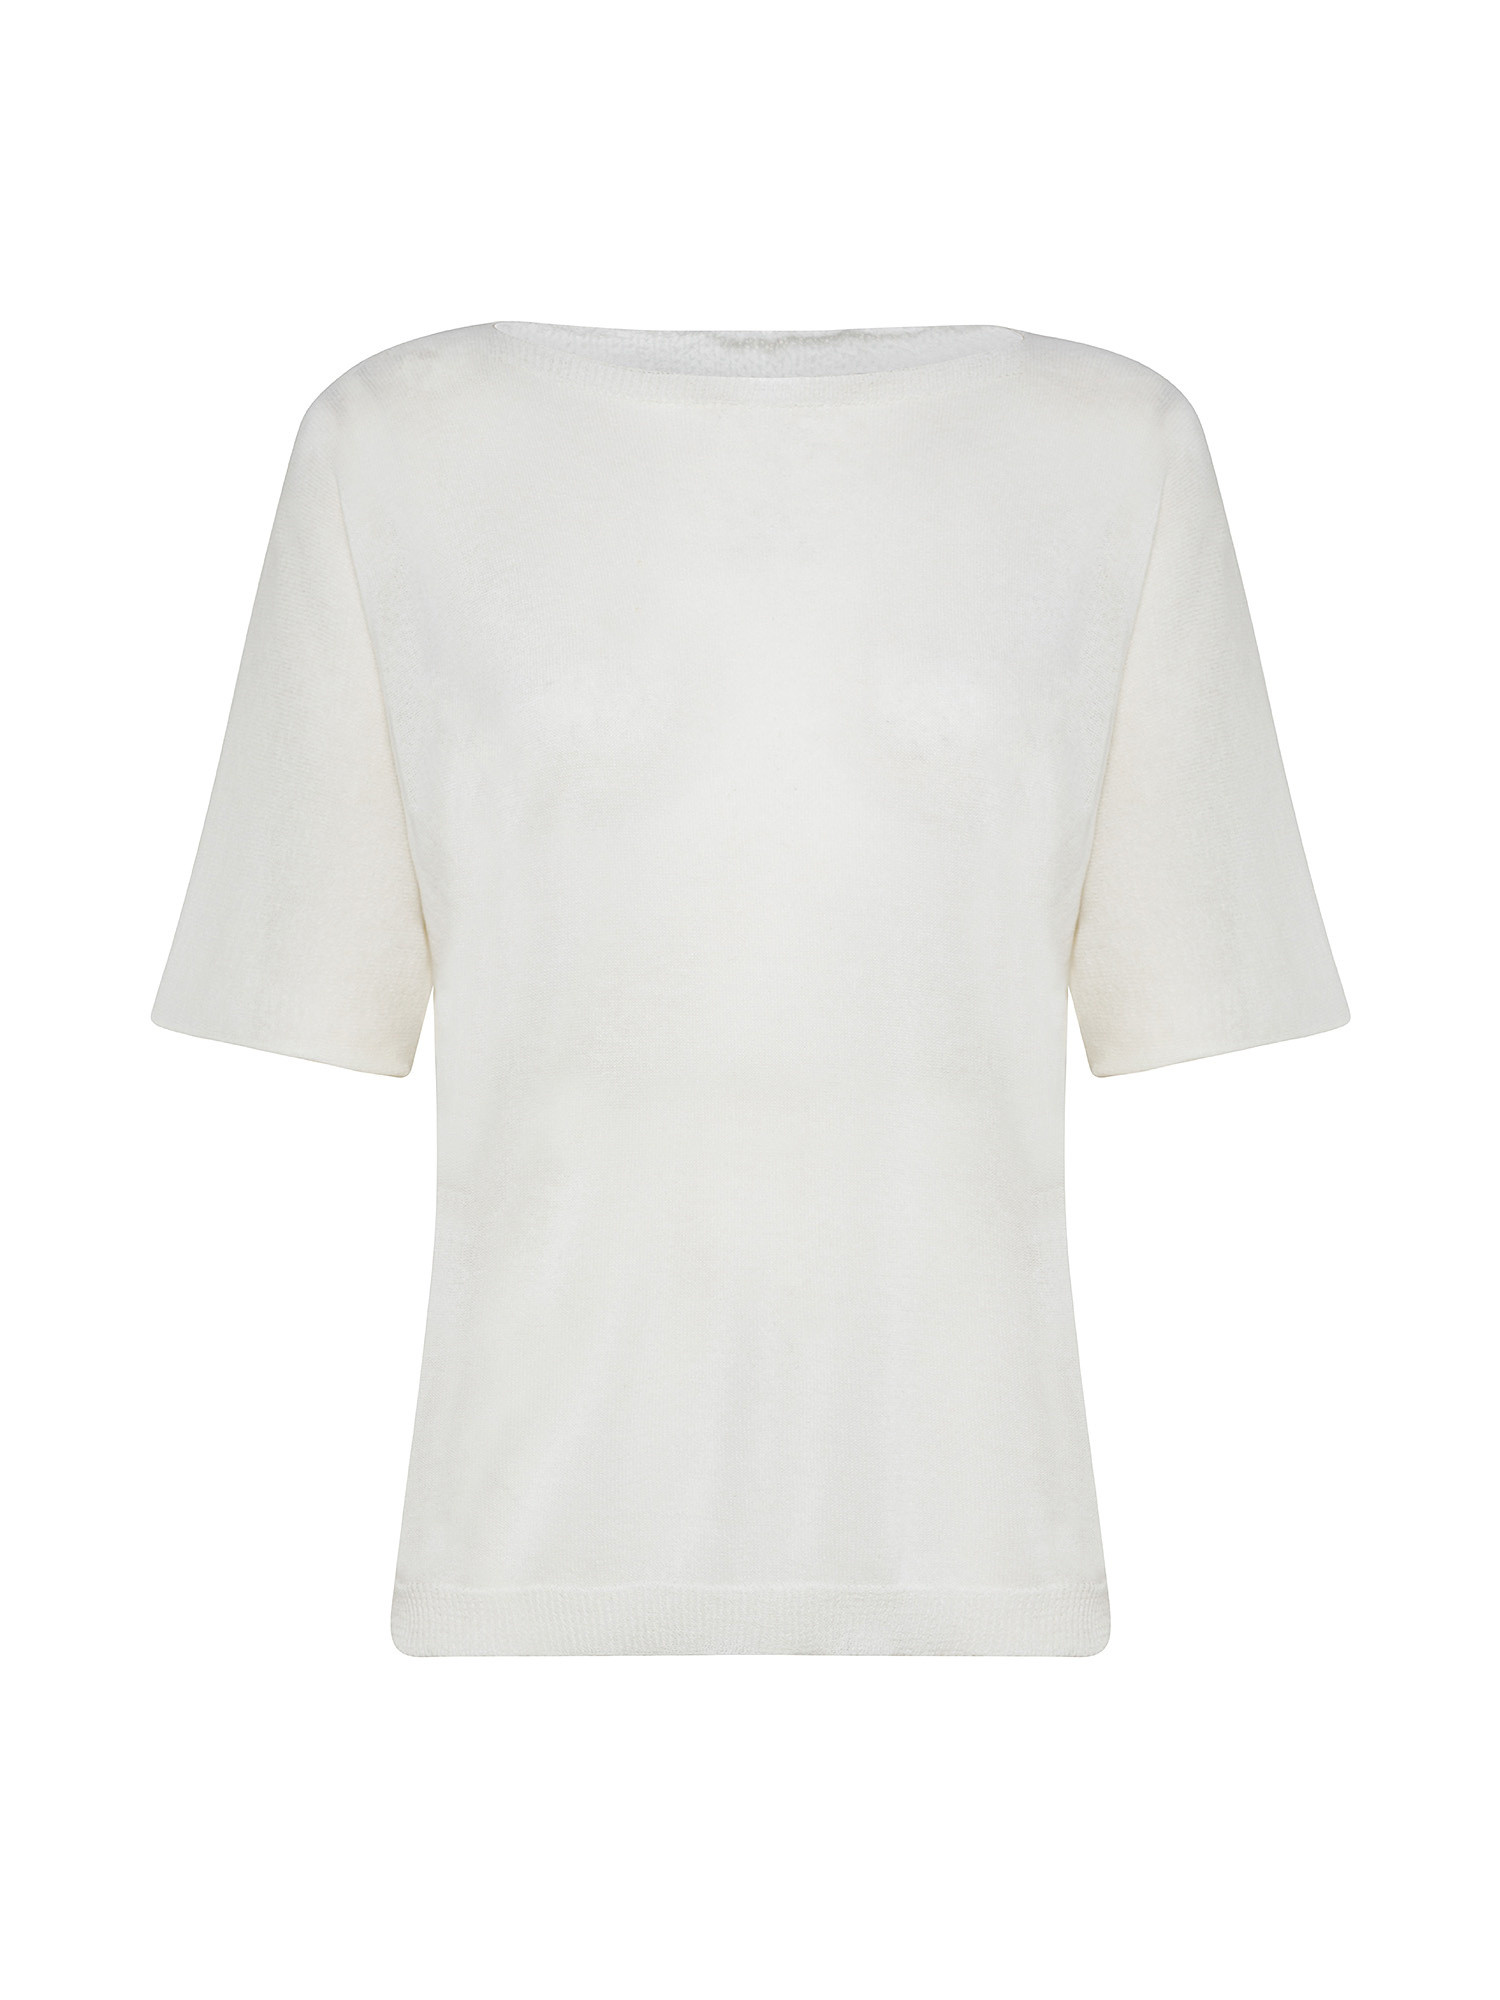 Kimono sleeve shirt, White, large image number 0